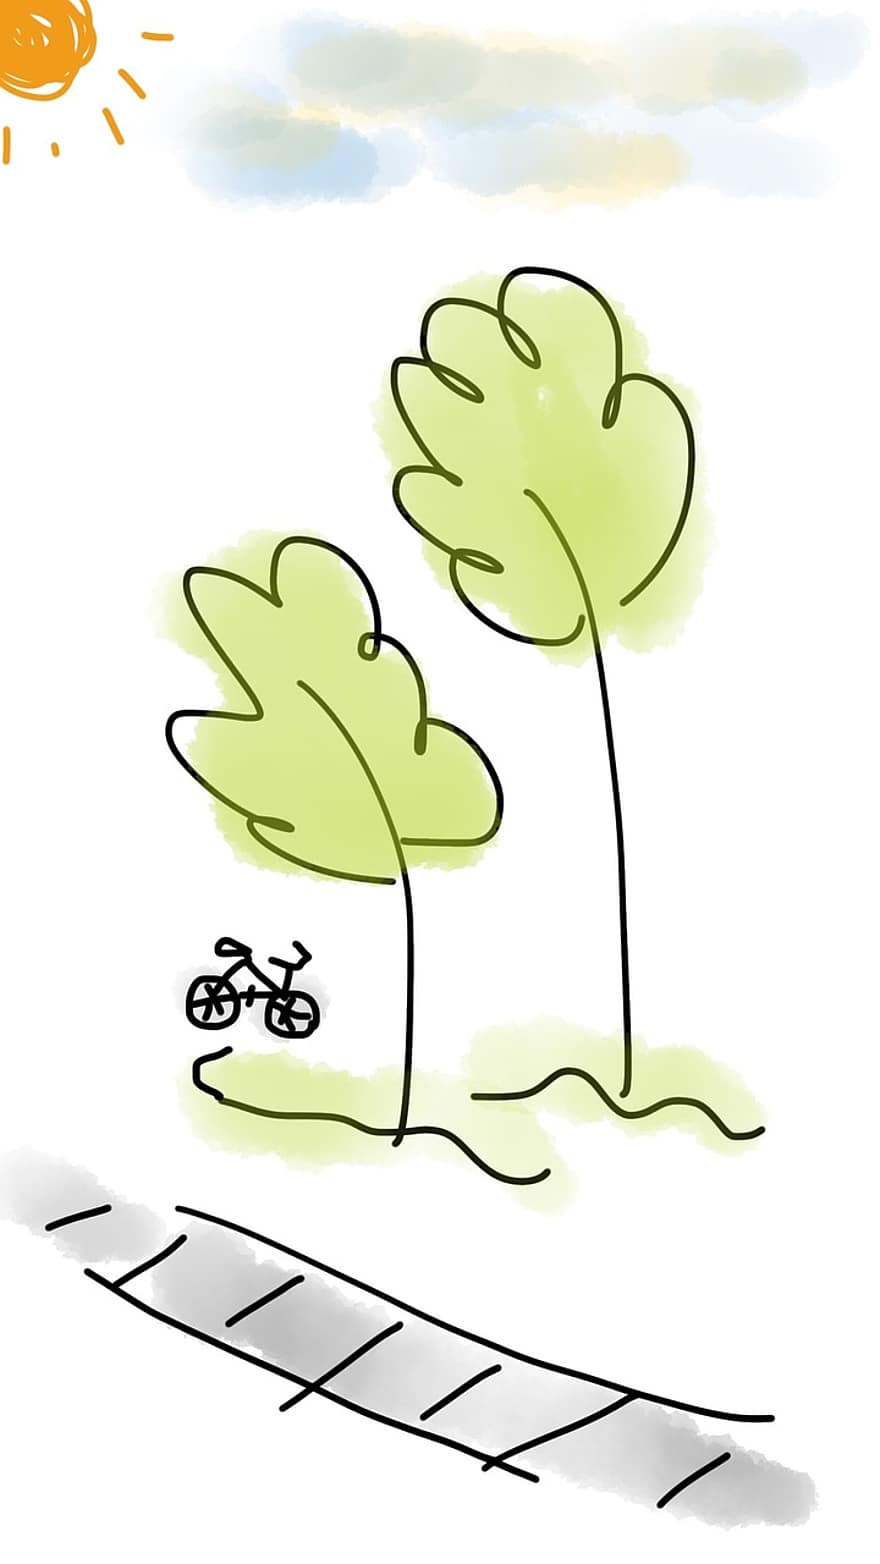 cykel, træ, udendørs, grøn, sti, sport, vej, aktivitet, cykling, sol, solrig